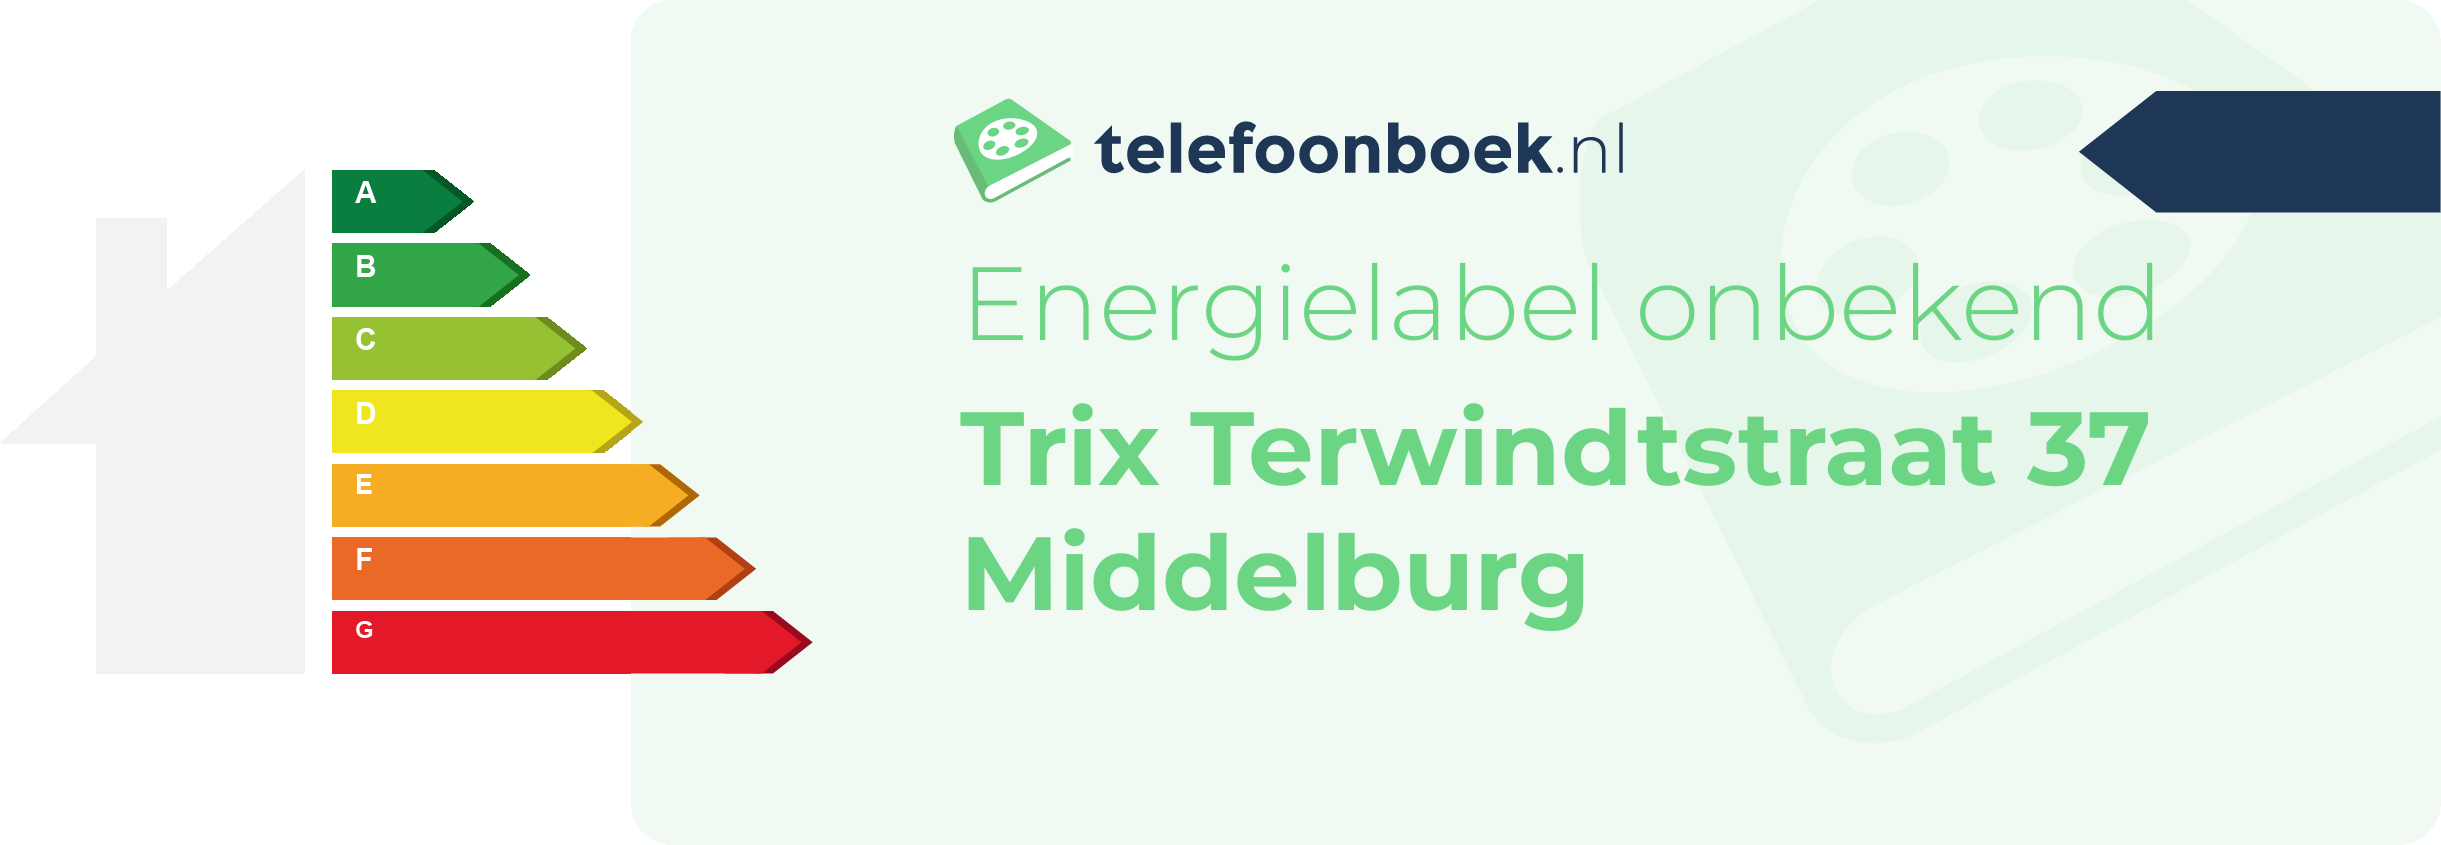 Energielabel Trix Terwindtstraat 37 Middelburg